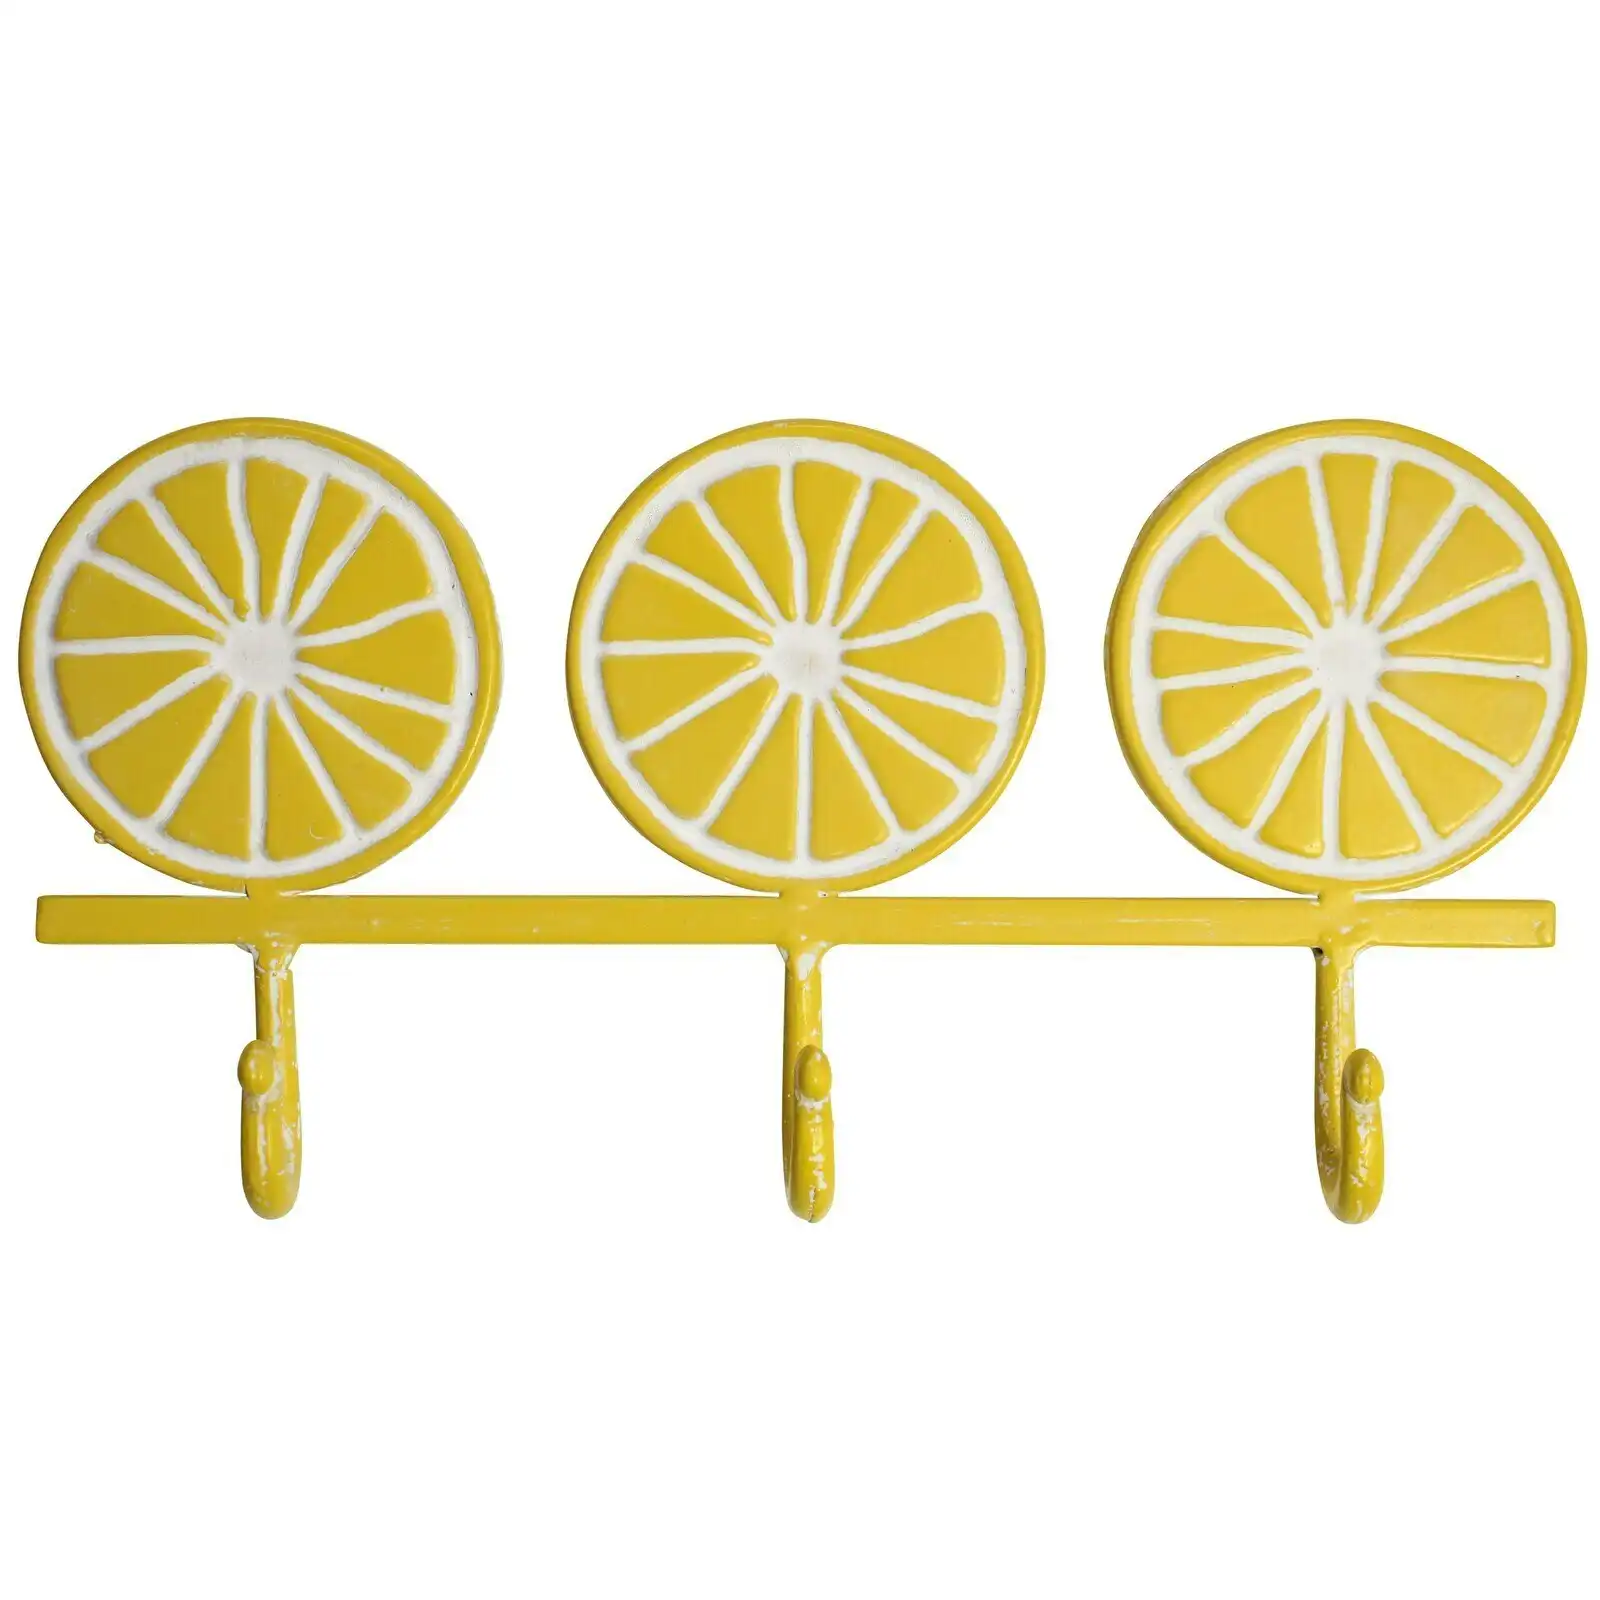 Hooks Lemon Citron Metal 32.5cm Wall Hanging Keys/Coat Hanger Organiser Yellow